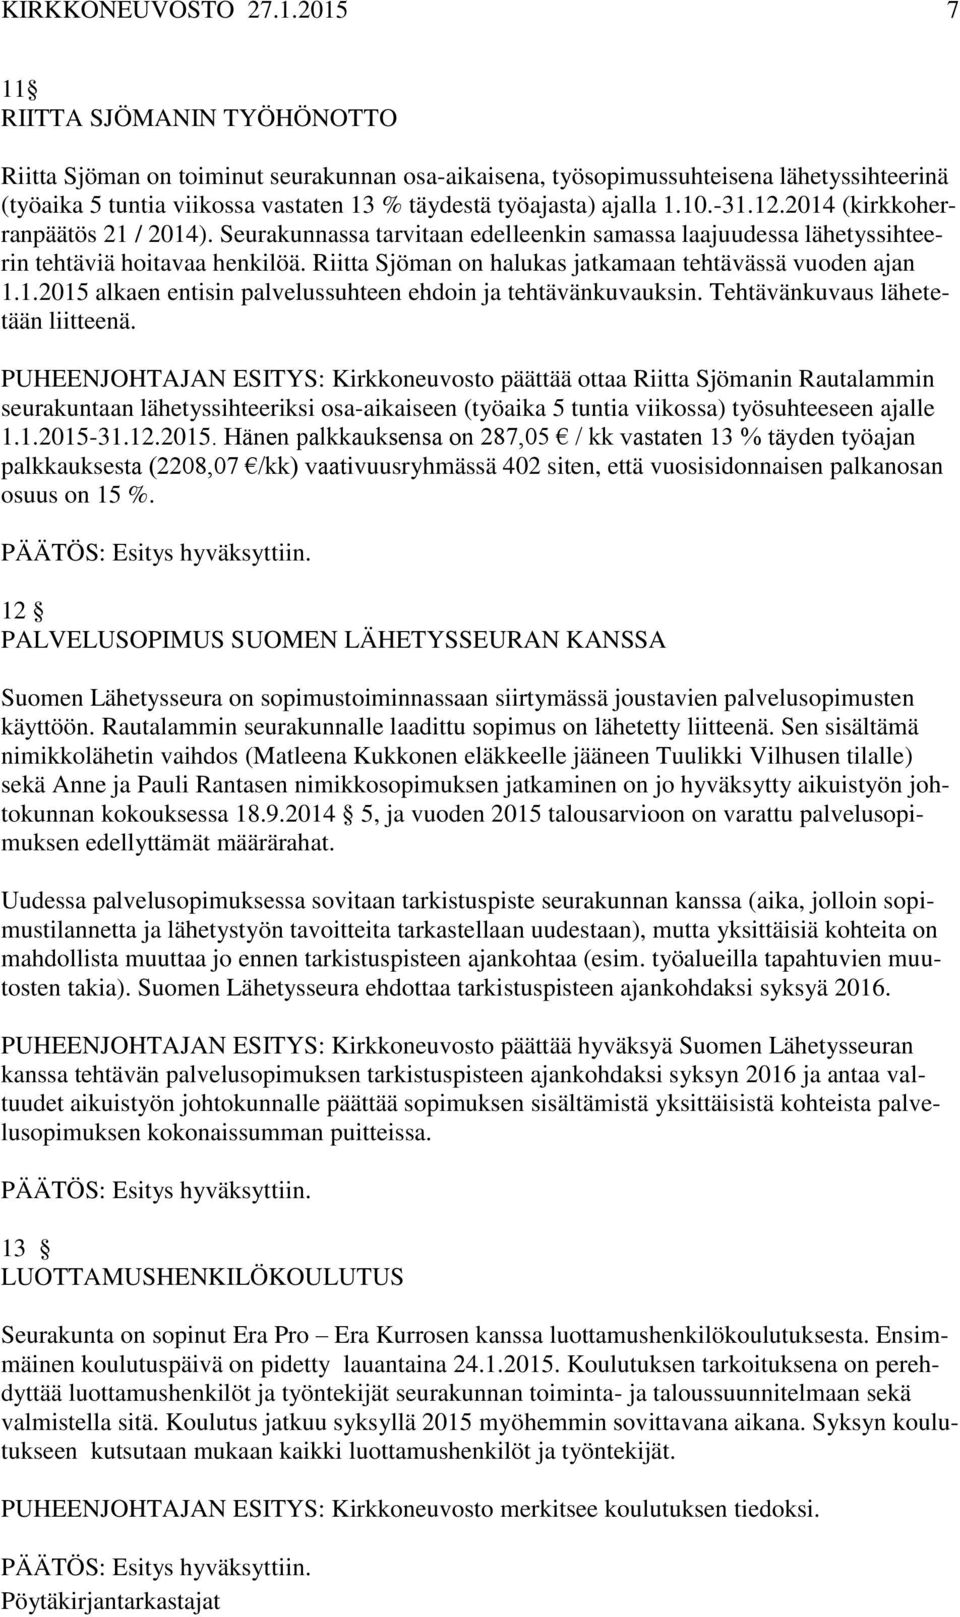 Riitta Sjöman on halukas jatkamaan tehtävässä vuoden ajan 1.1.2015 alkaen entisin palvelussuhteen ehdoin ja tehtävänkuvauksin. Tehtävänkuvaus lähetetään liitteenä.